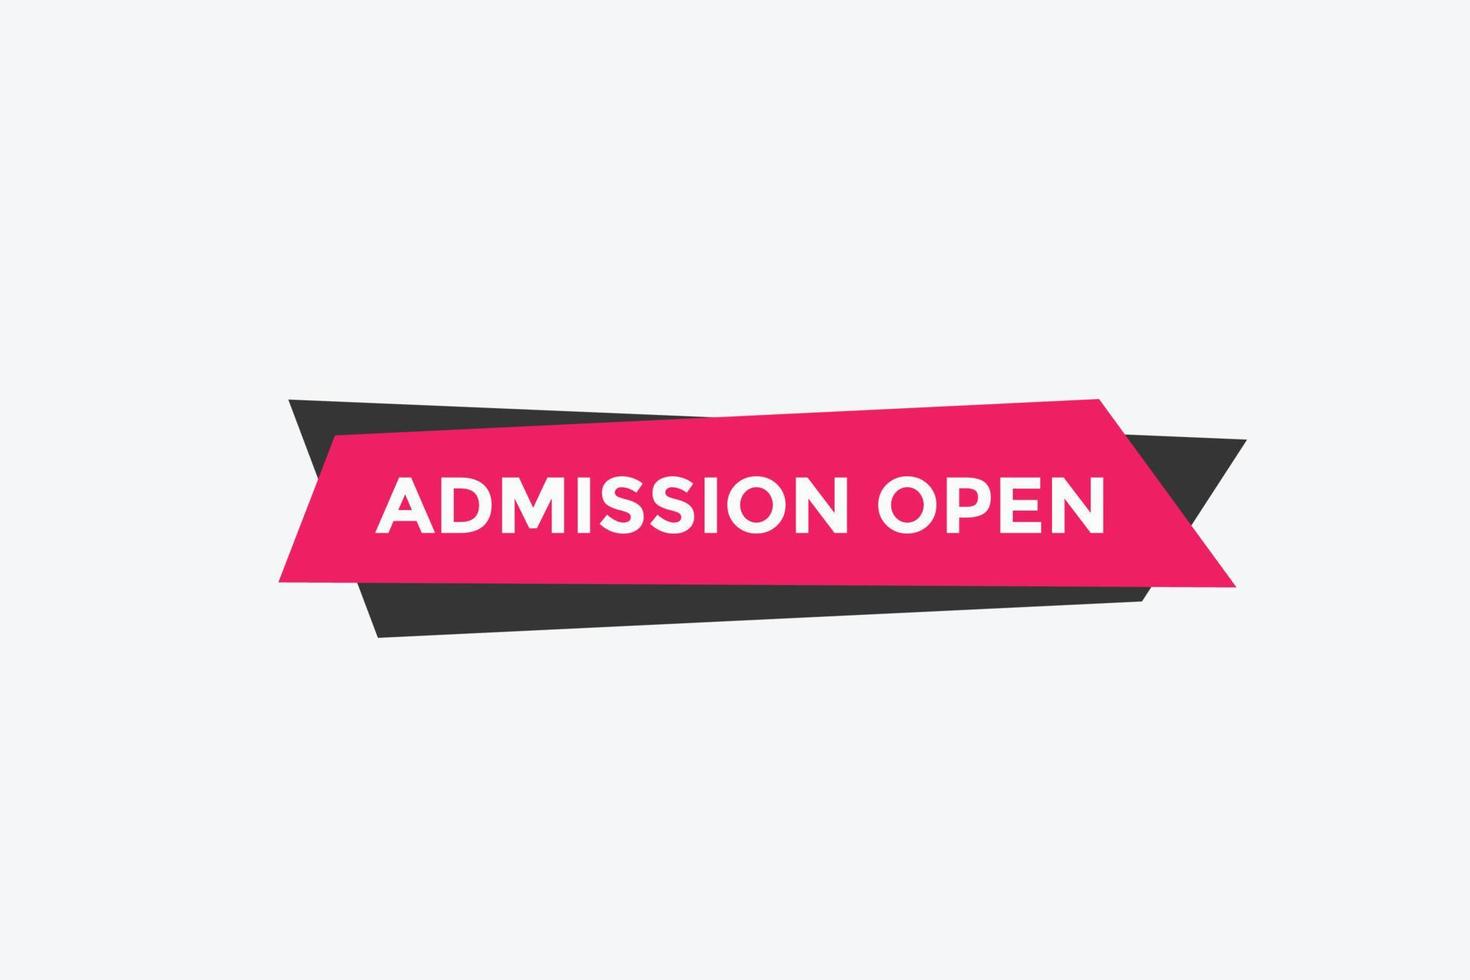 banner aberto de admissão. modelo de botão web de texto de banner aberto de admissão. vetor